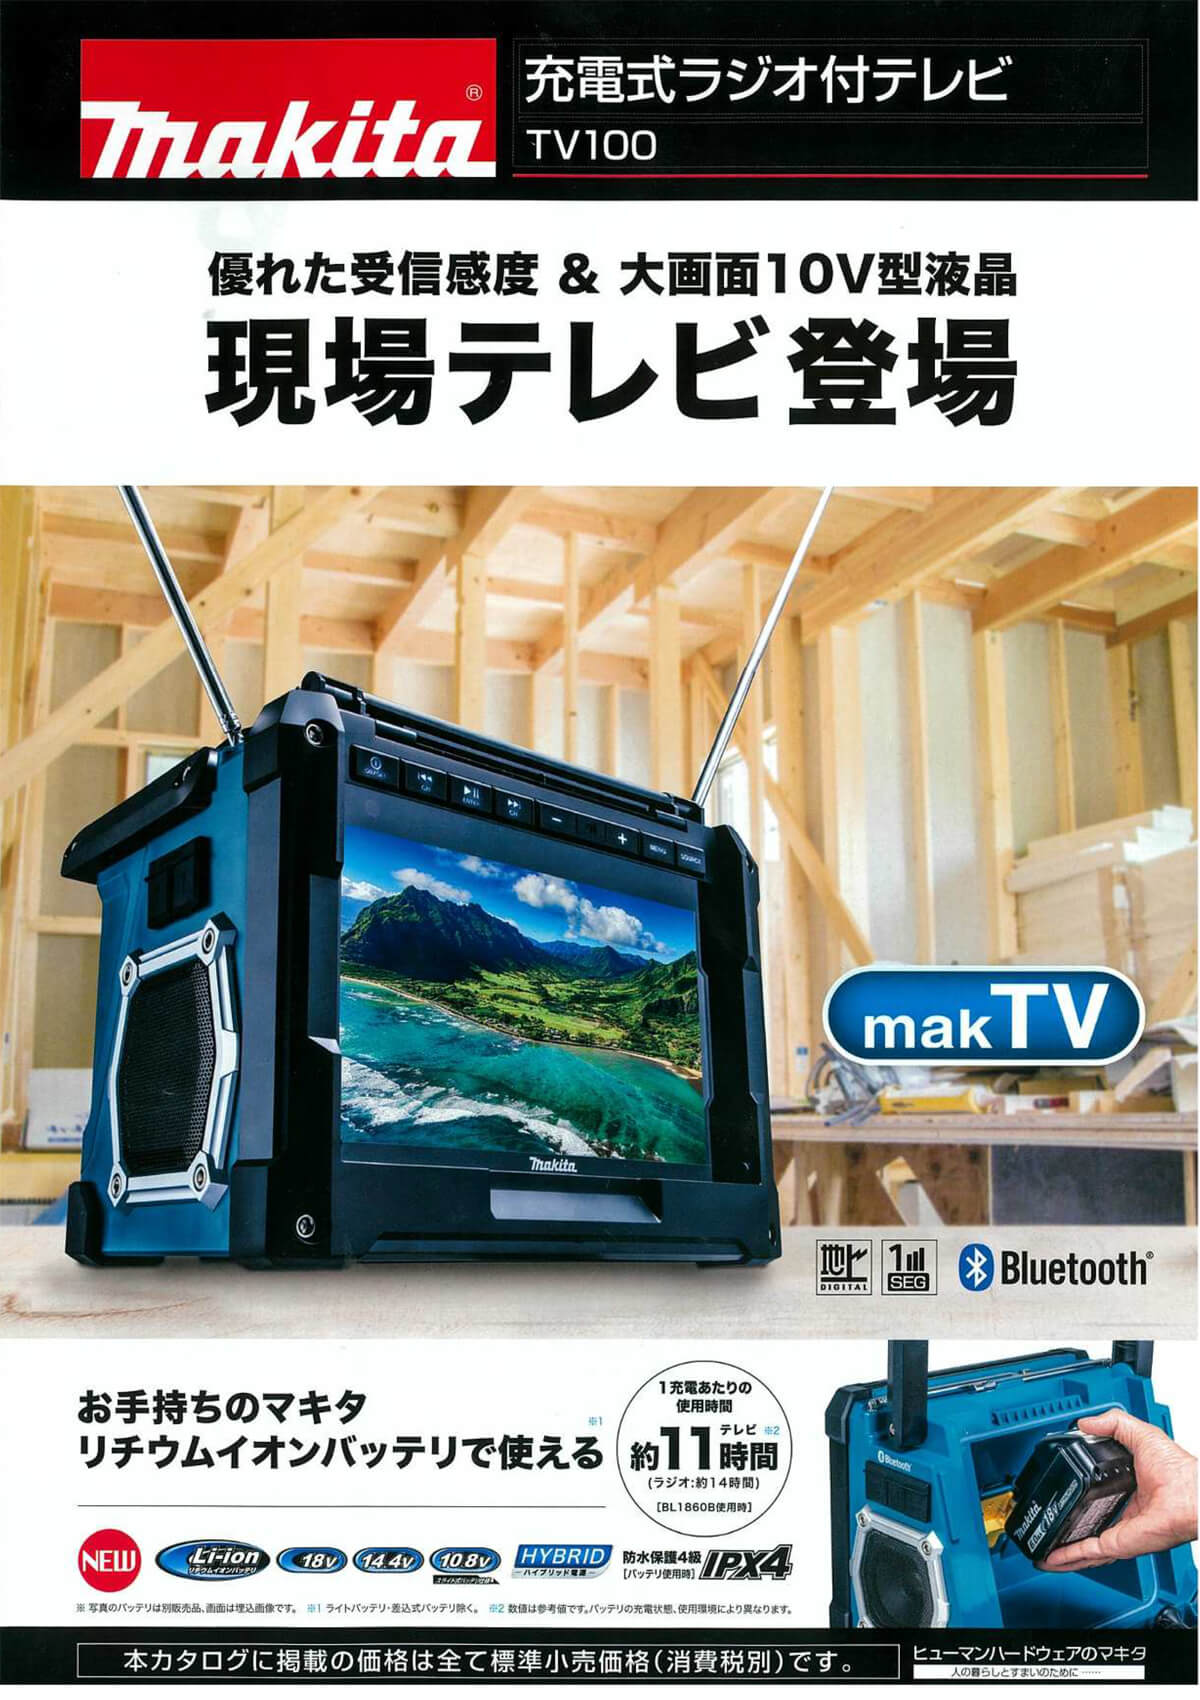 マキタ CK1012 防災用コンボキットを【動画で解説】